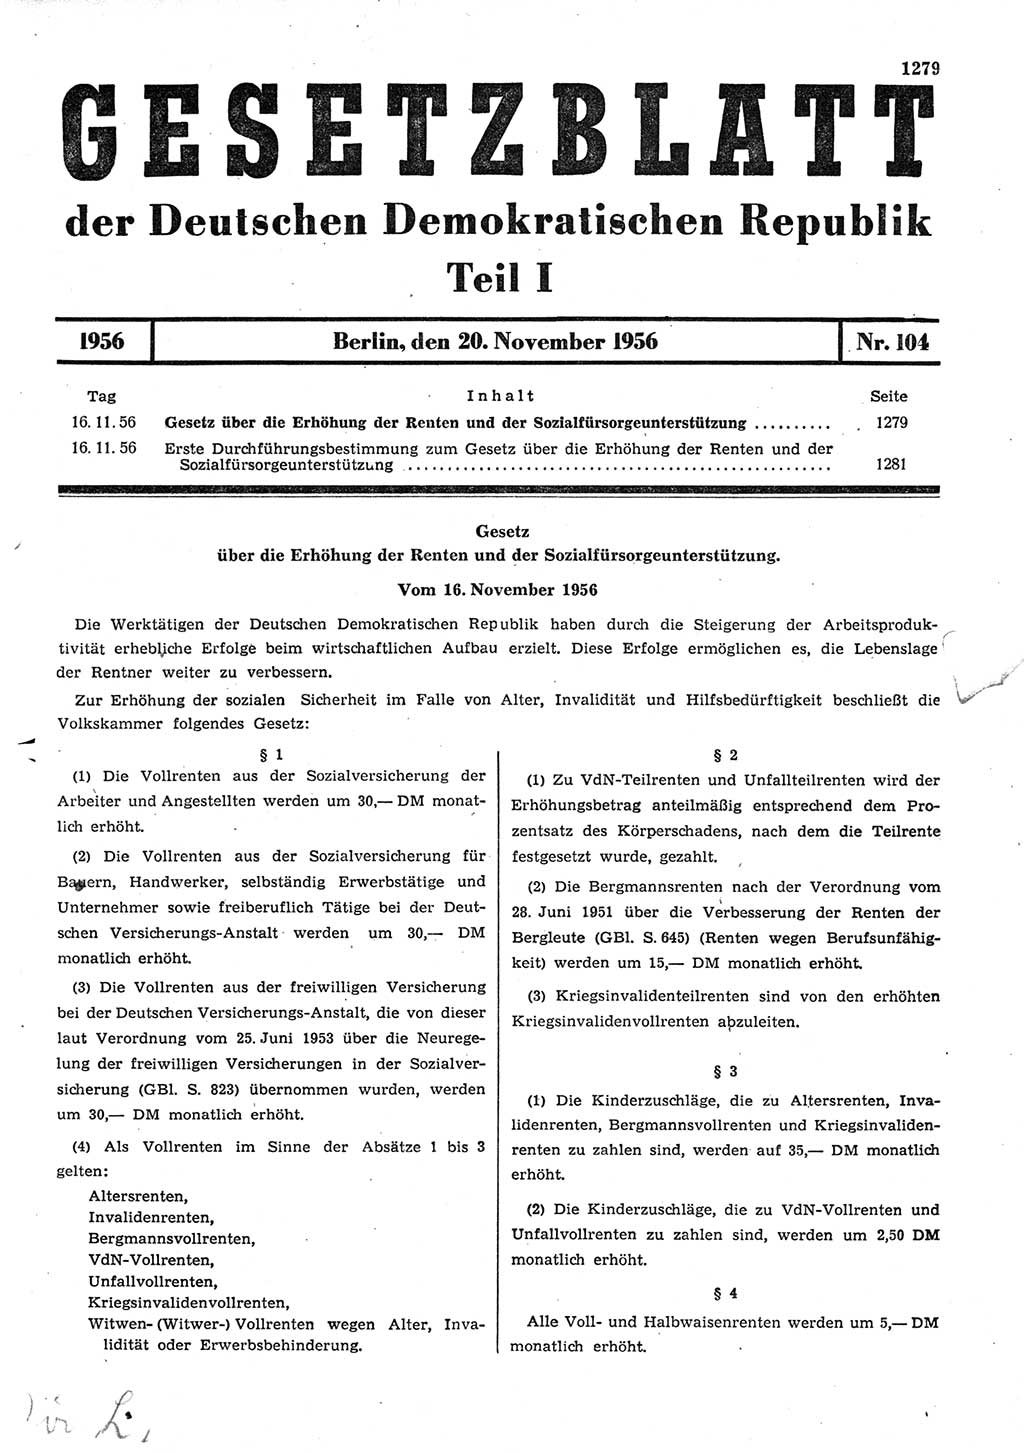 Gesetzblatt (GBl.) der Deutschen Demokratischen Republik (DDR) Teil Ⅰ 1956, Seite 1279 (GBl. DDR Ⅰ 1956, S. 1279)